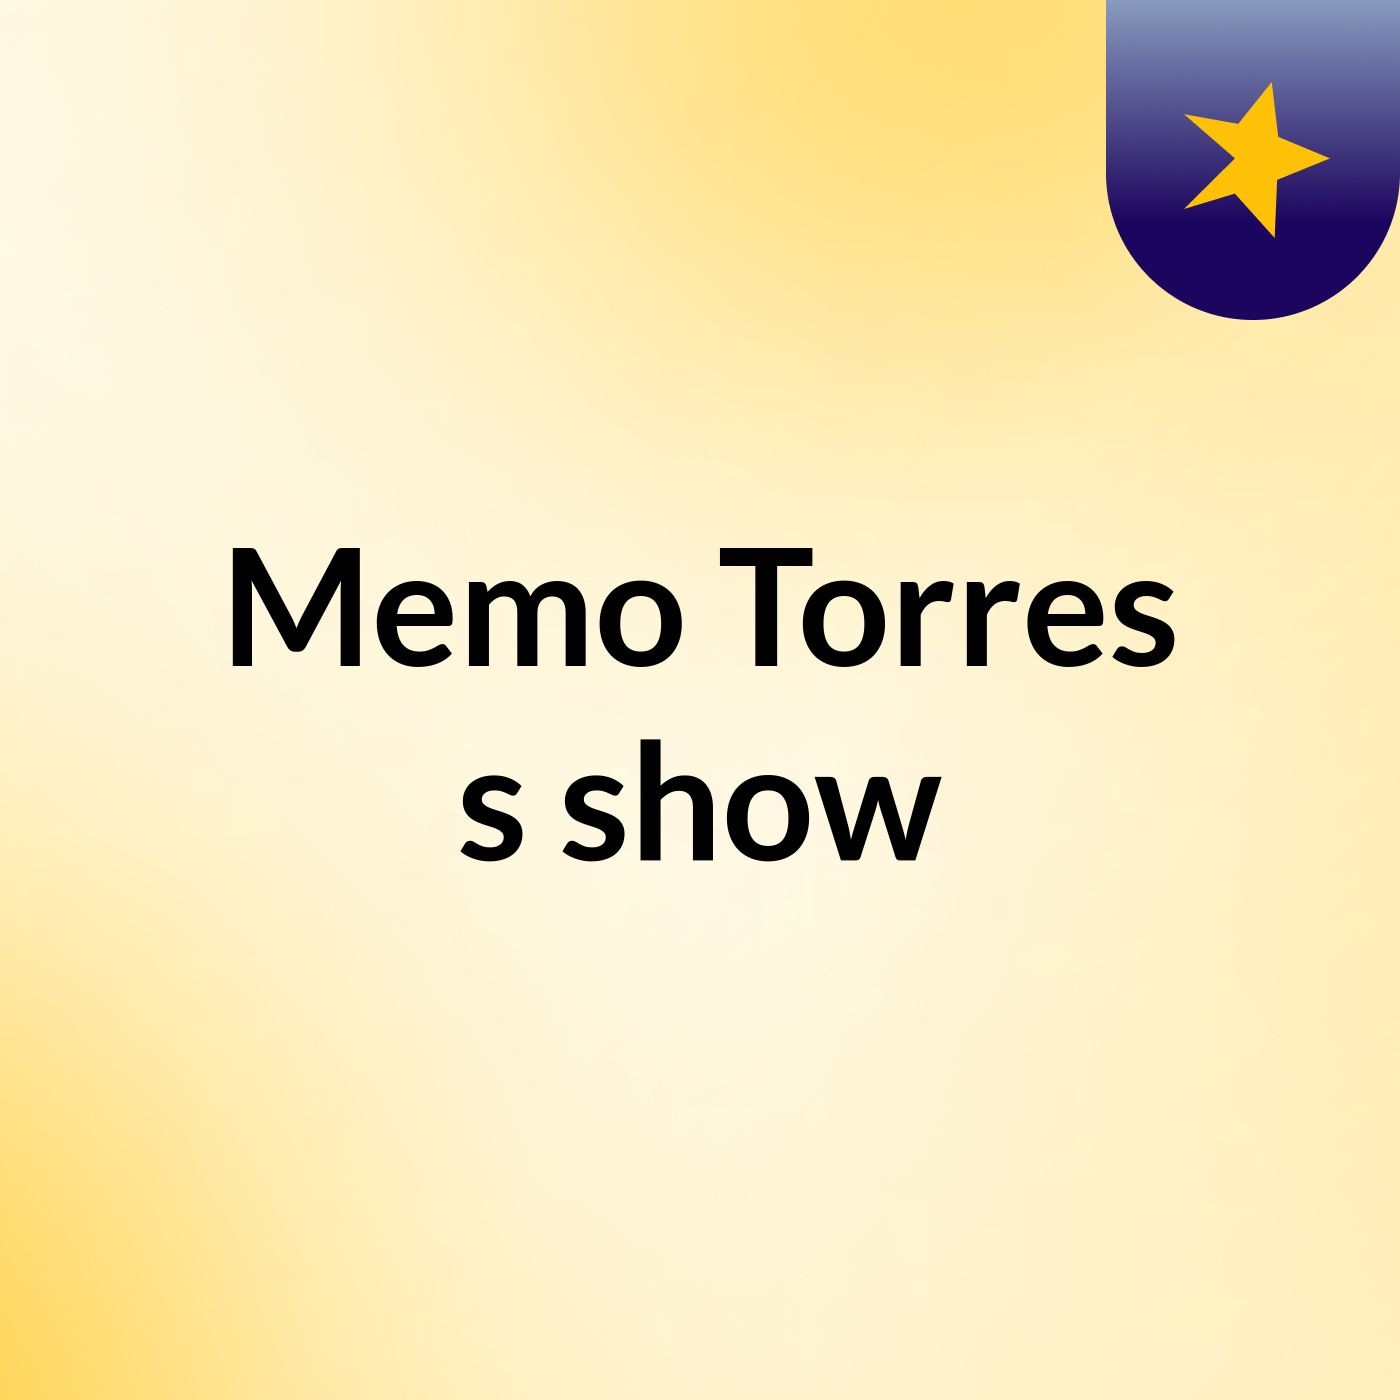 Memo Torres's show